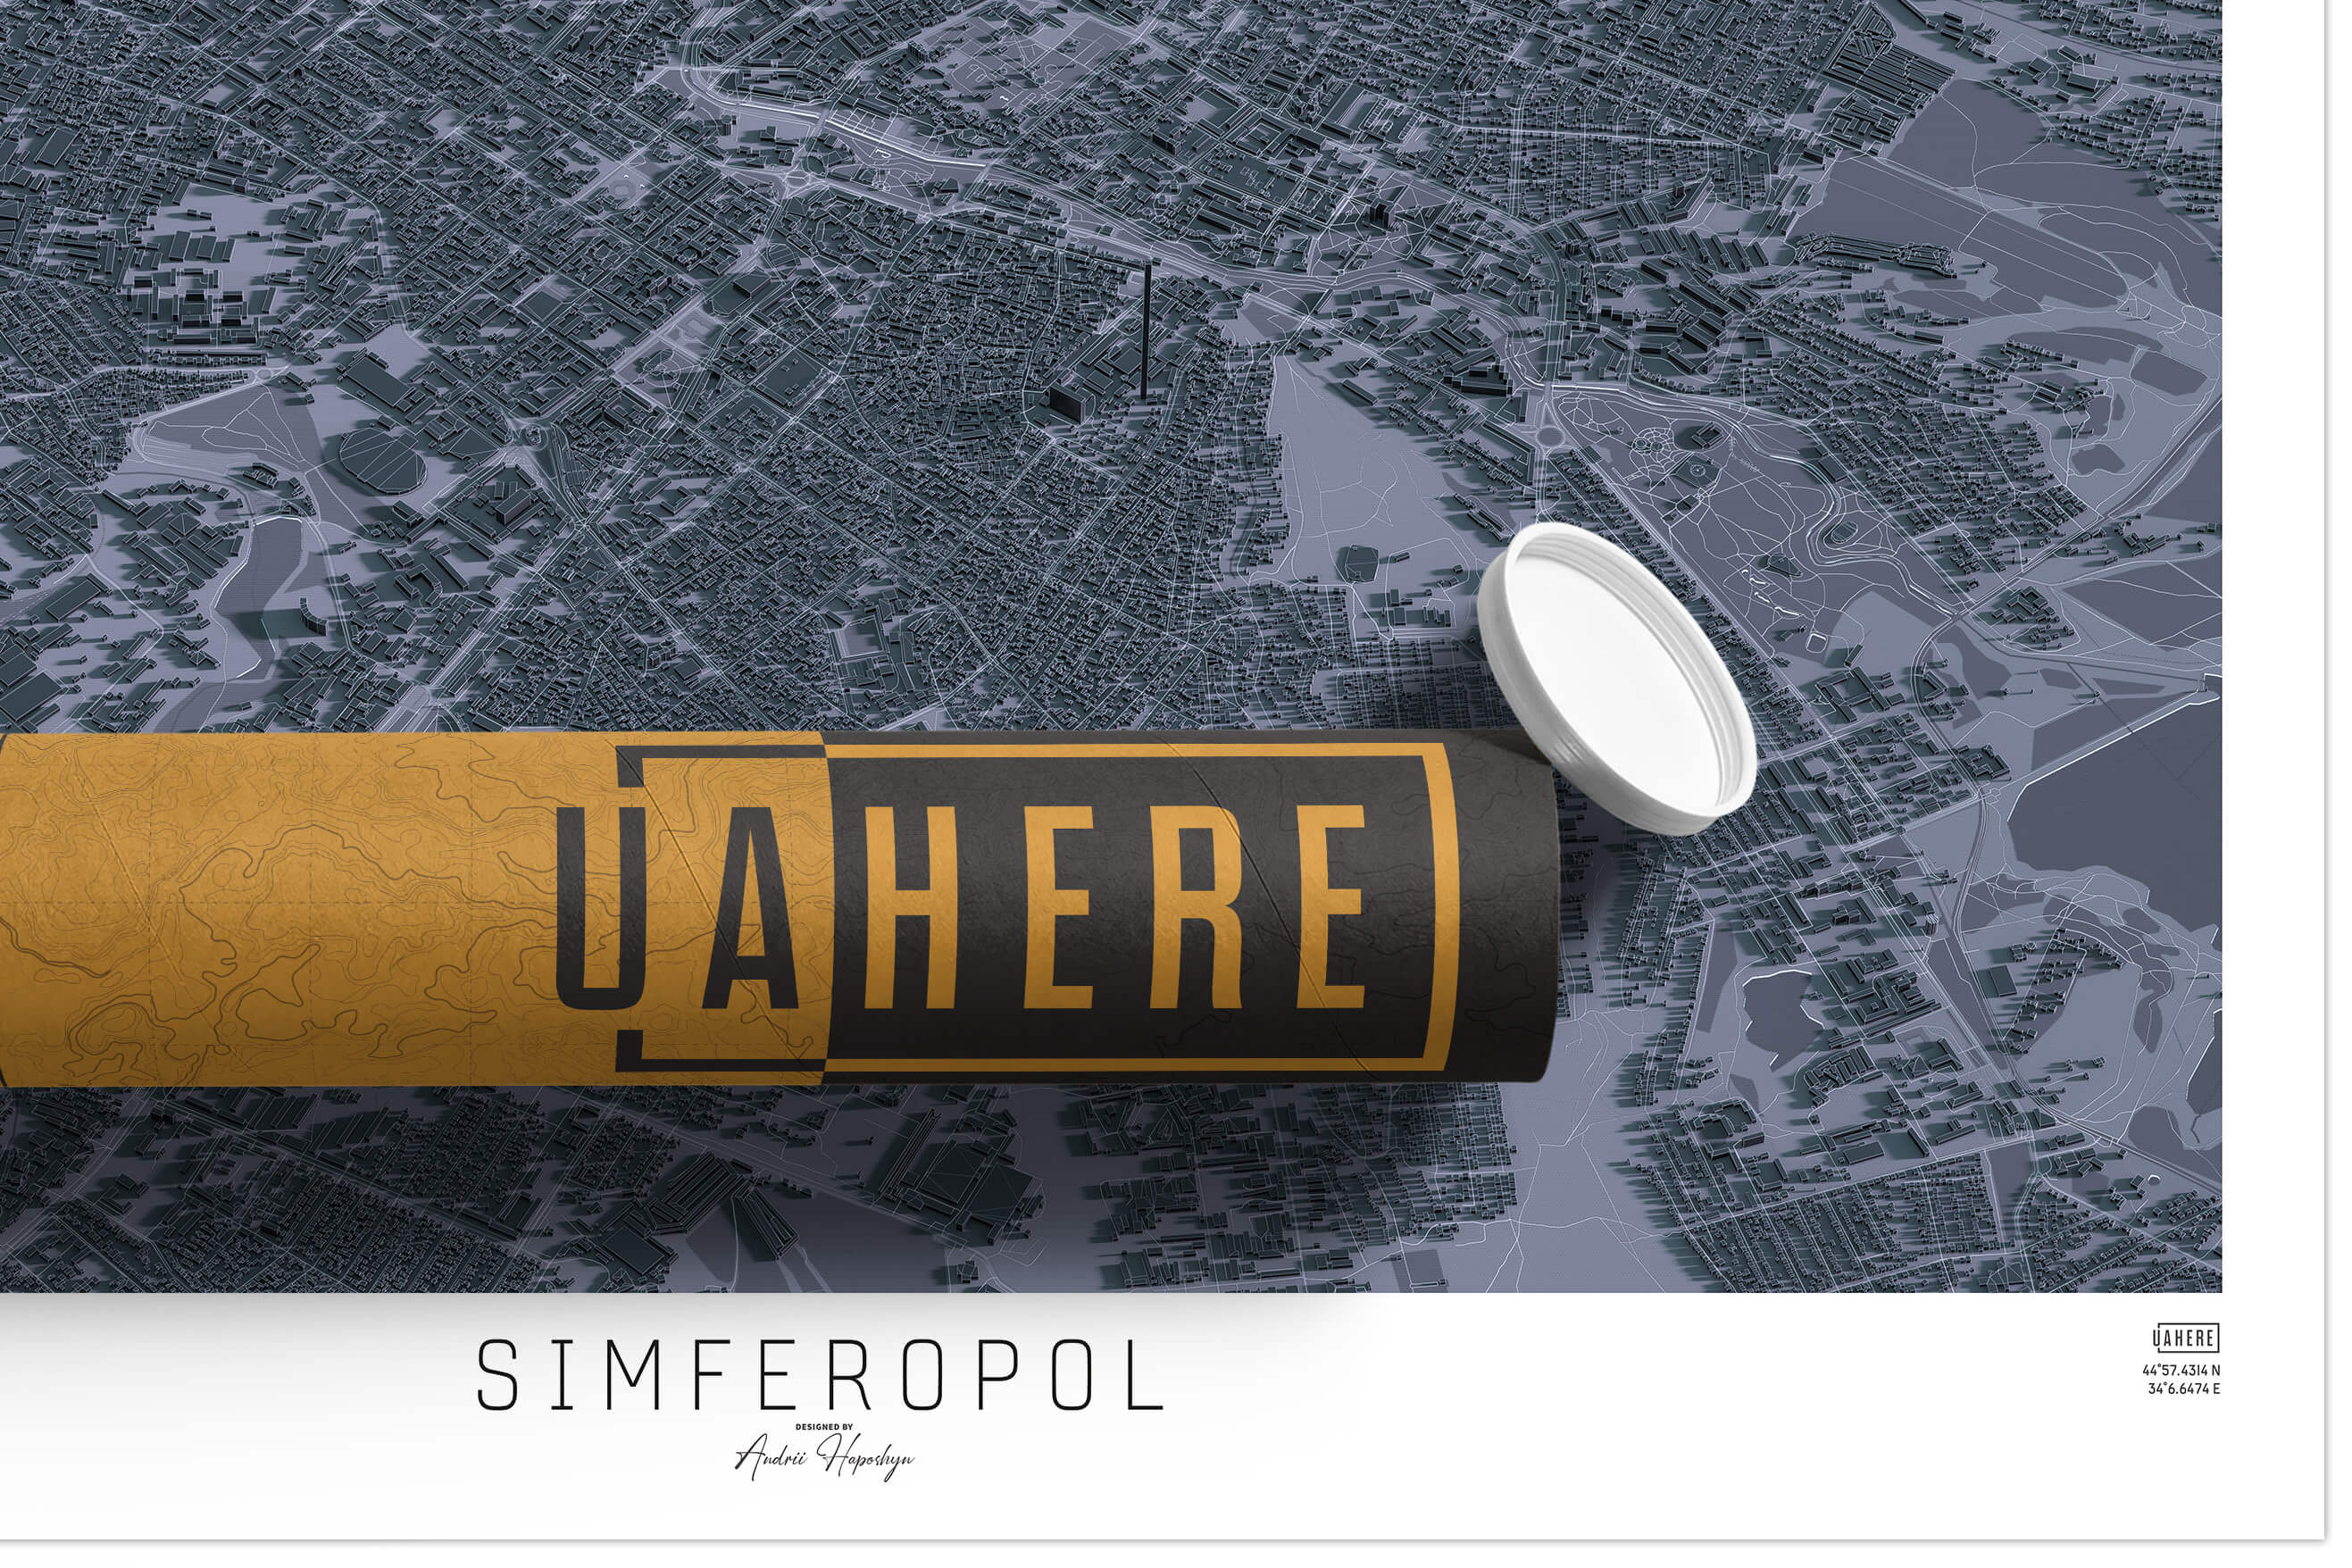 Брендований тубус UAHERE та надрукована стільна мапа Сімферополю